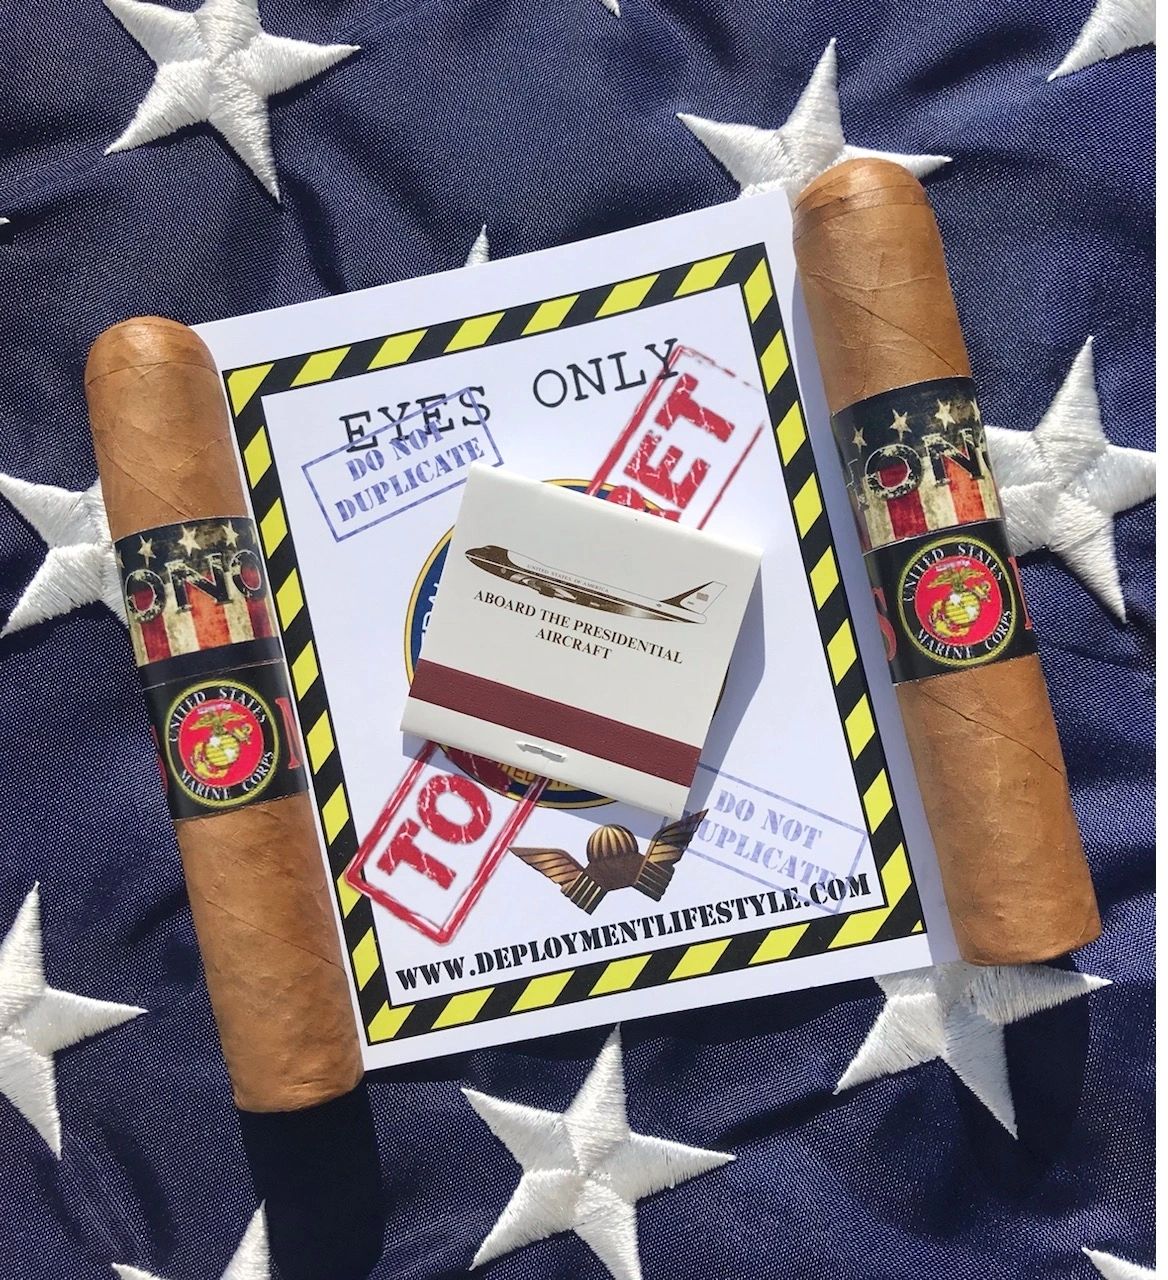 LT Col. Steve Petrosino USMC Ret. Honor Cigar Promo four pack sampler